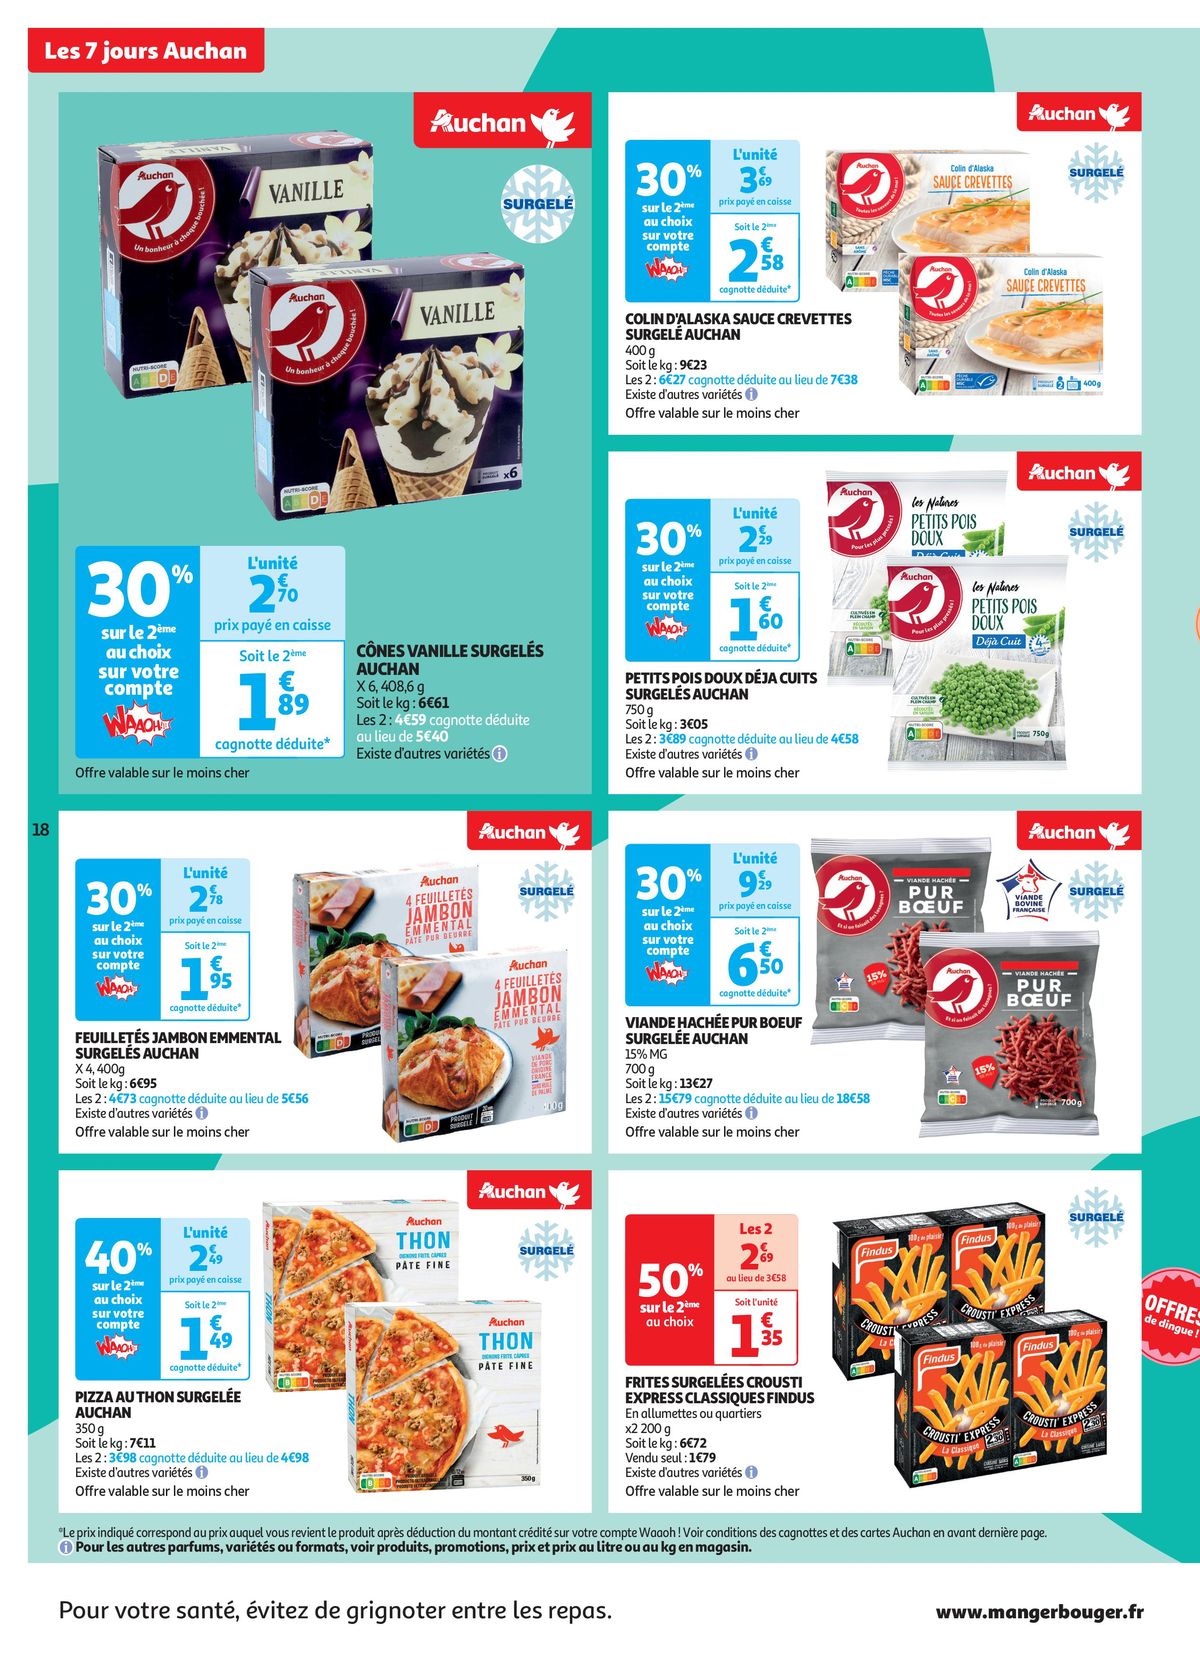 Catalogue C'est les 7 jours Auchan dans votre super !, page 00018